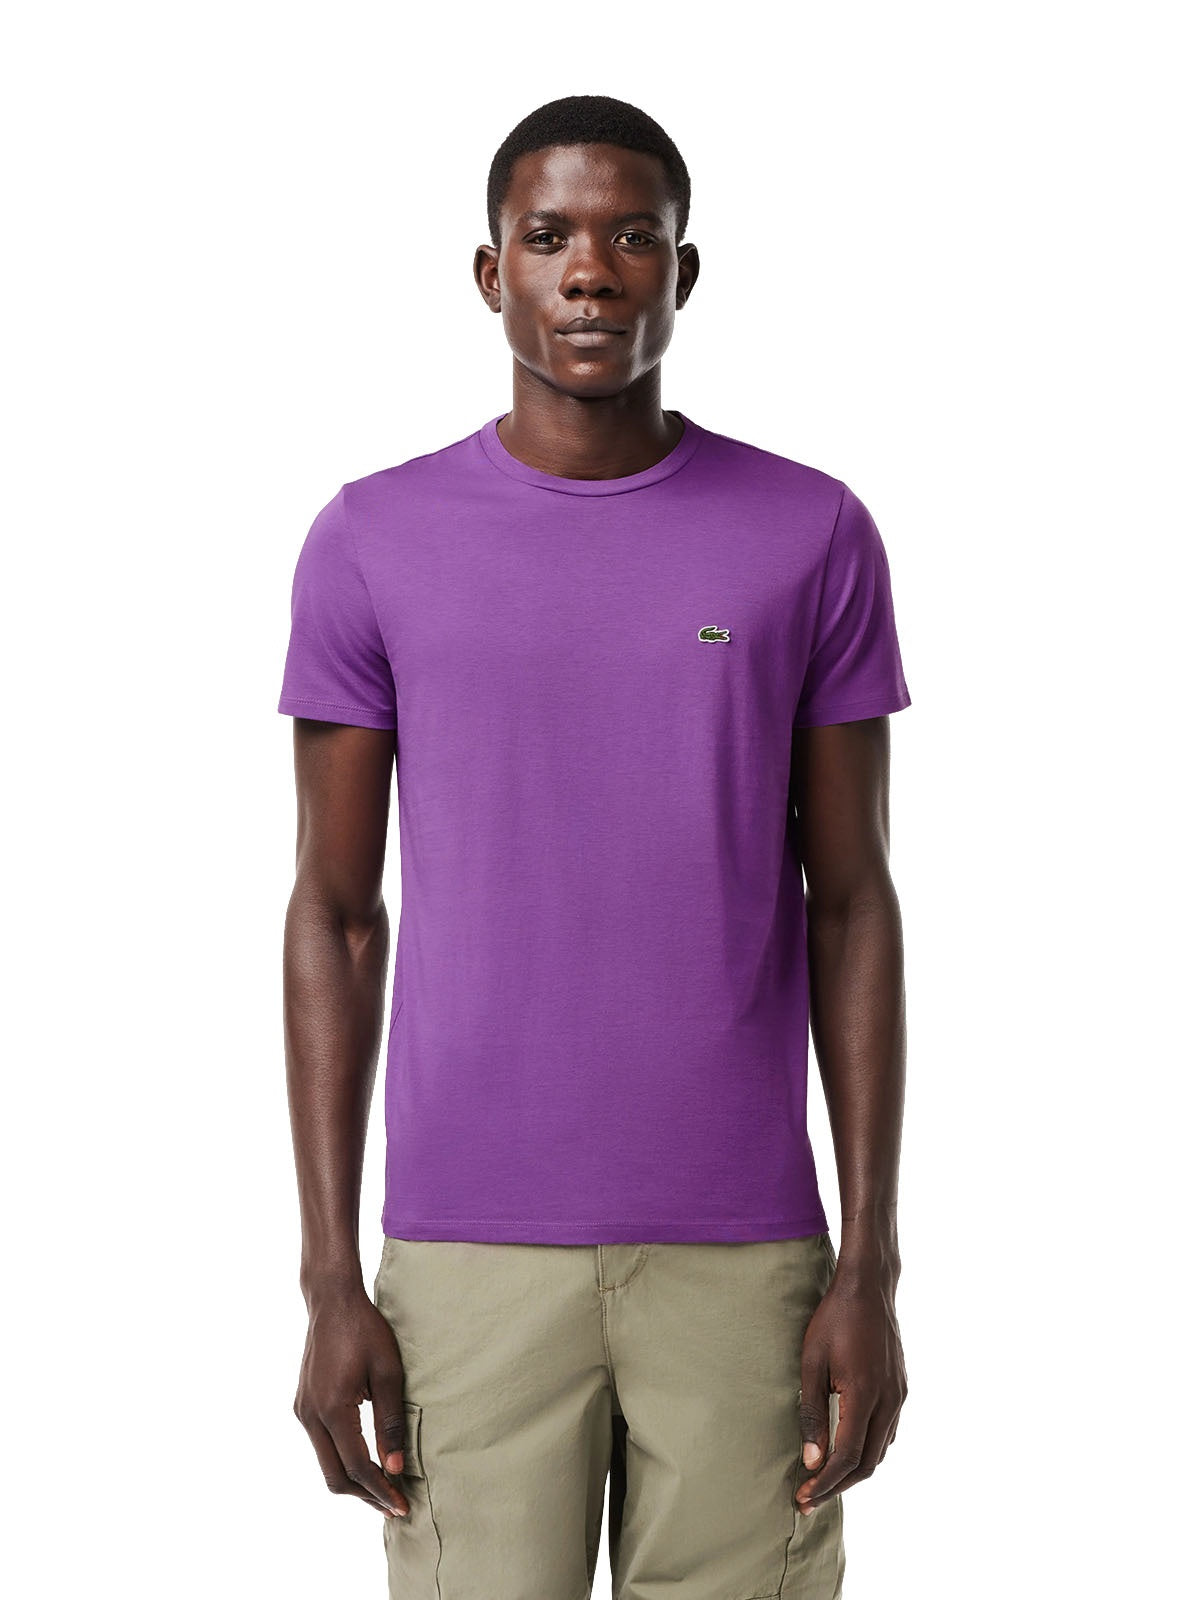 T-shirt Uomo Lacoste - T-Shirt A Girocollo In Jersey Di Cotone Pima - Viola